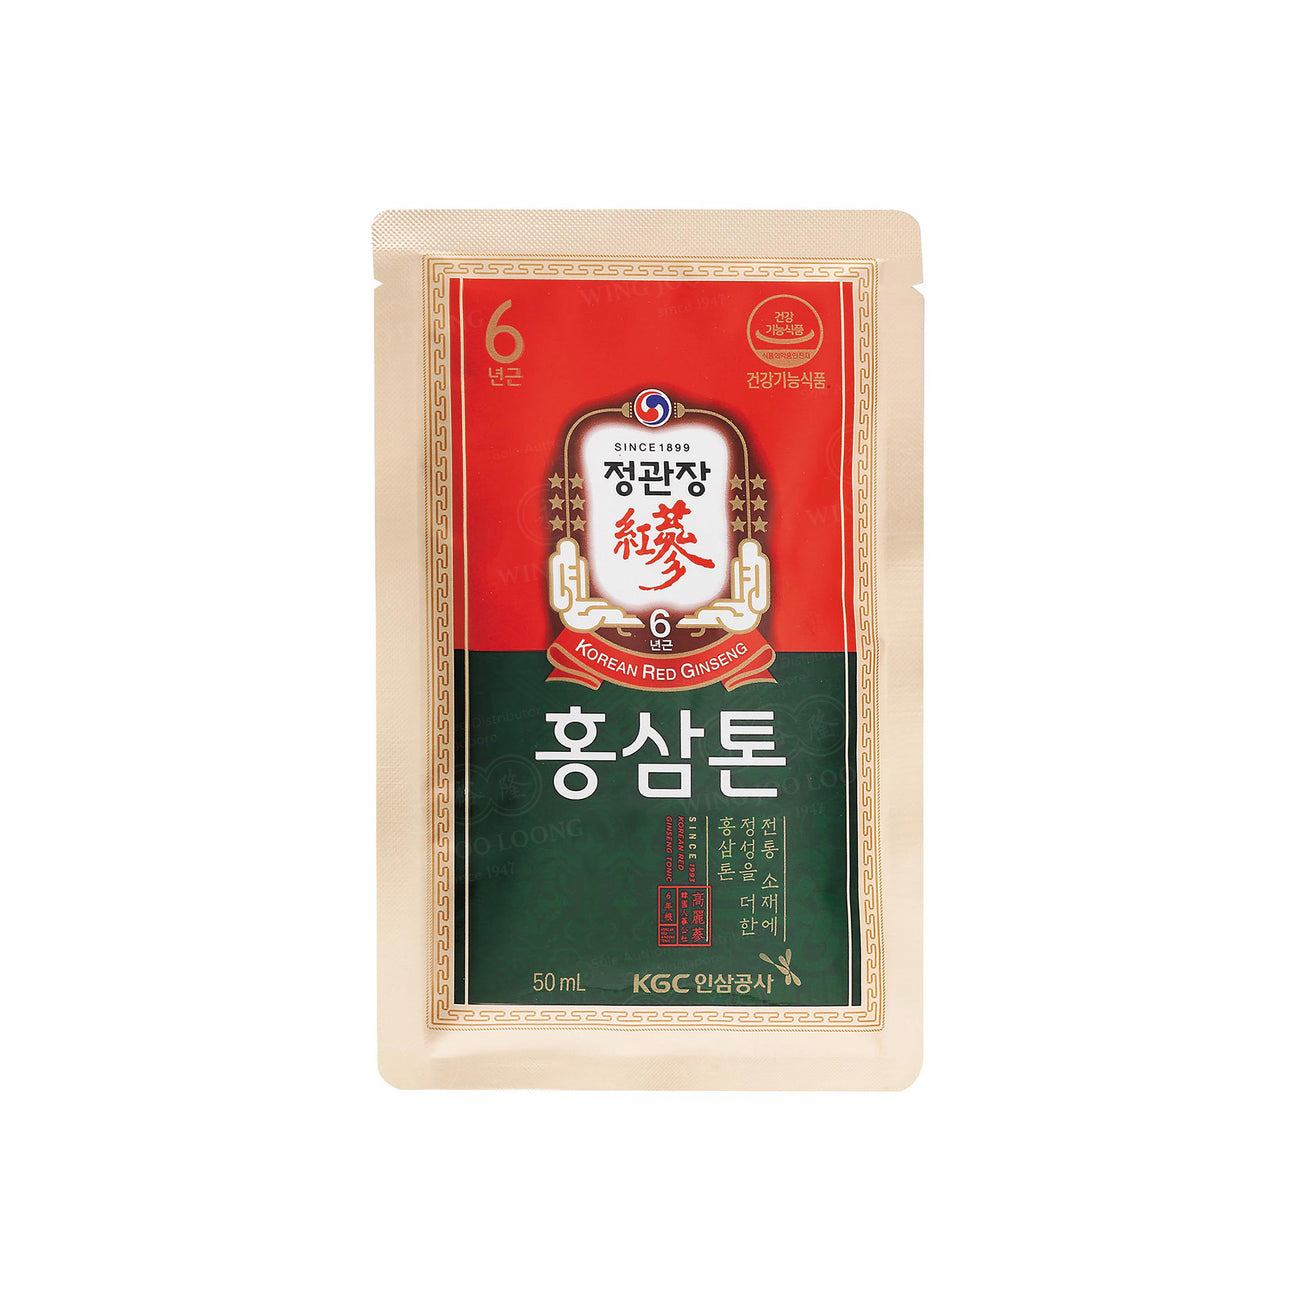 Cheong Kwan Jang Korean Red Ginseng Extract Tonic 高丽参炖